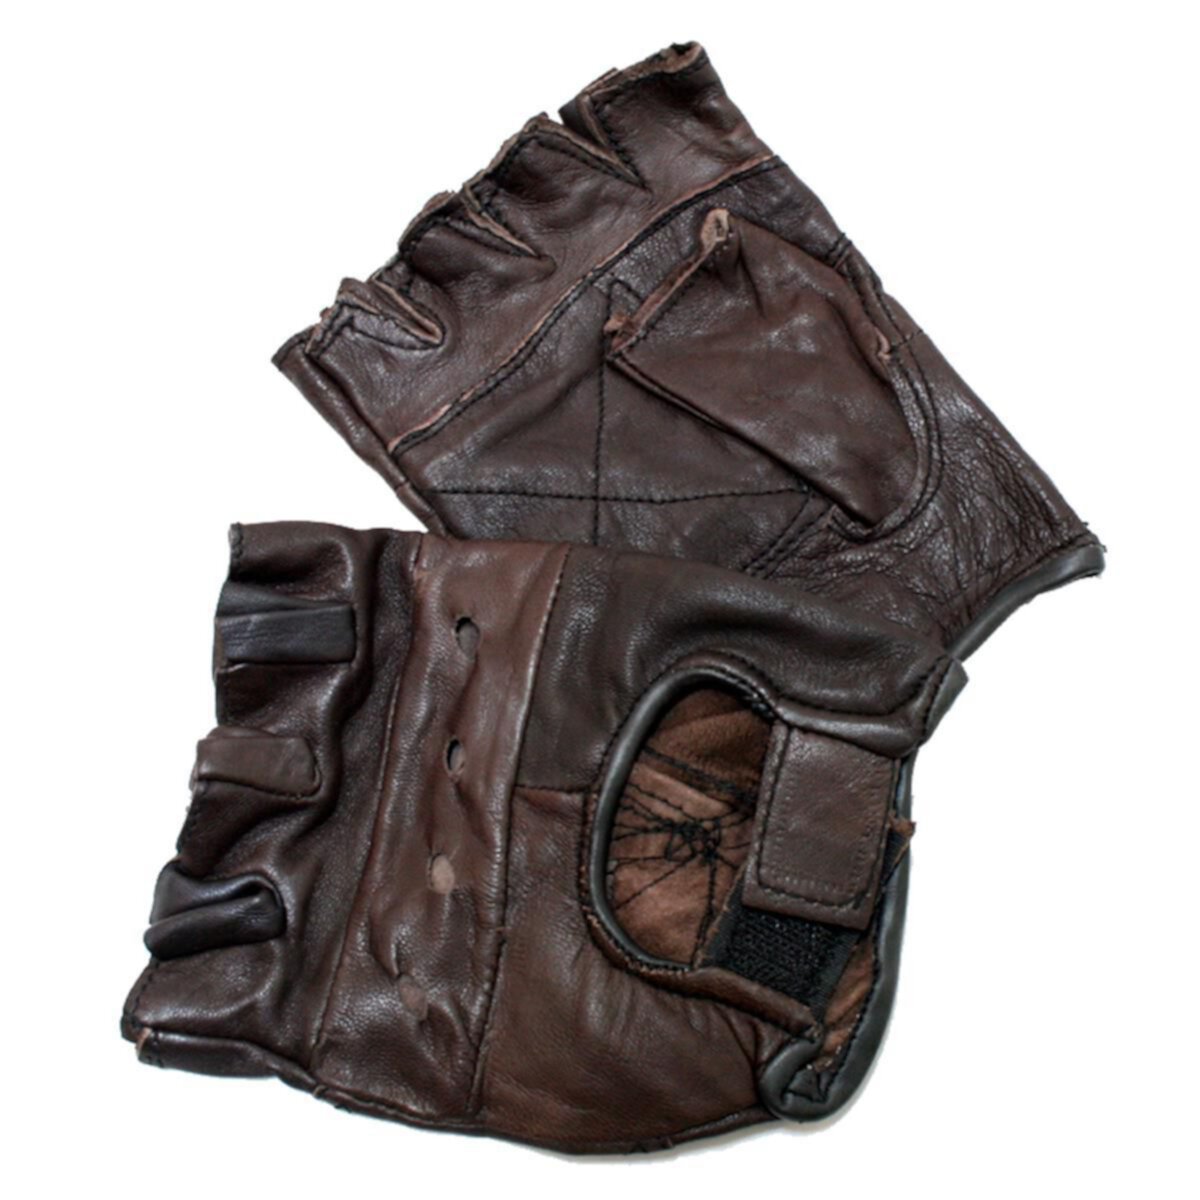 Кожаные перчатки без пальцев Shelter 280-XXL, 2XL — коричневые Shelter